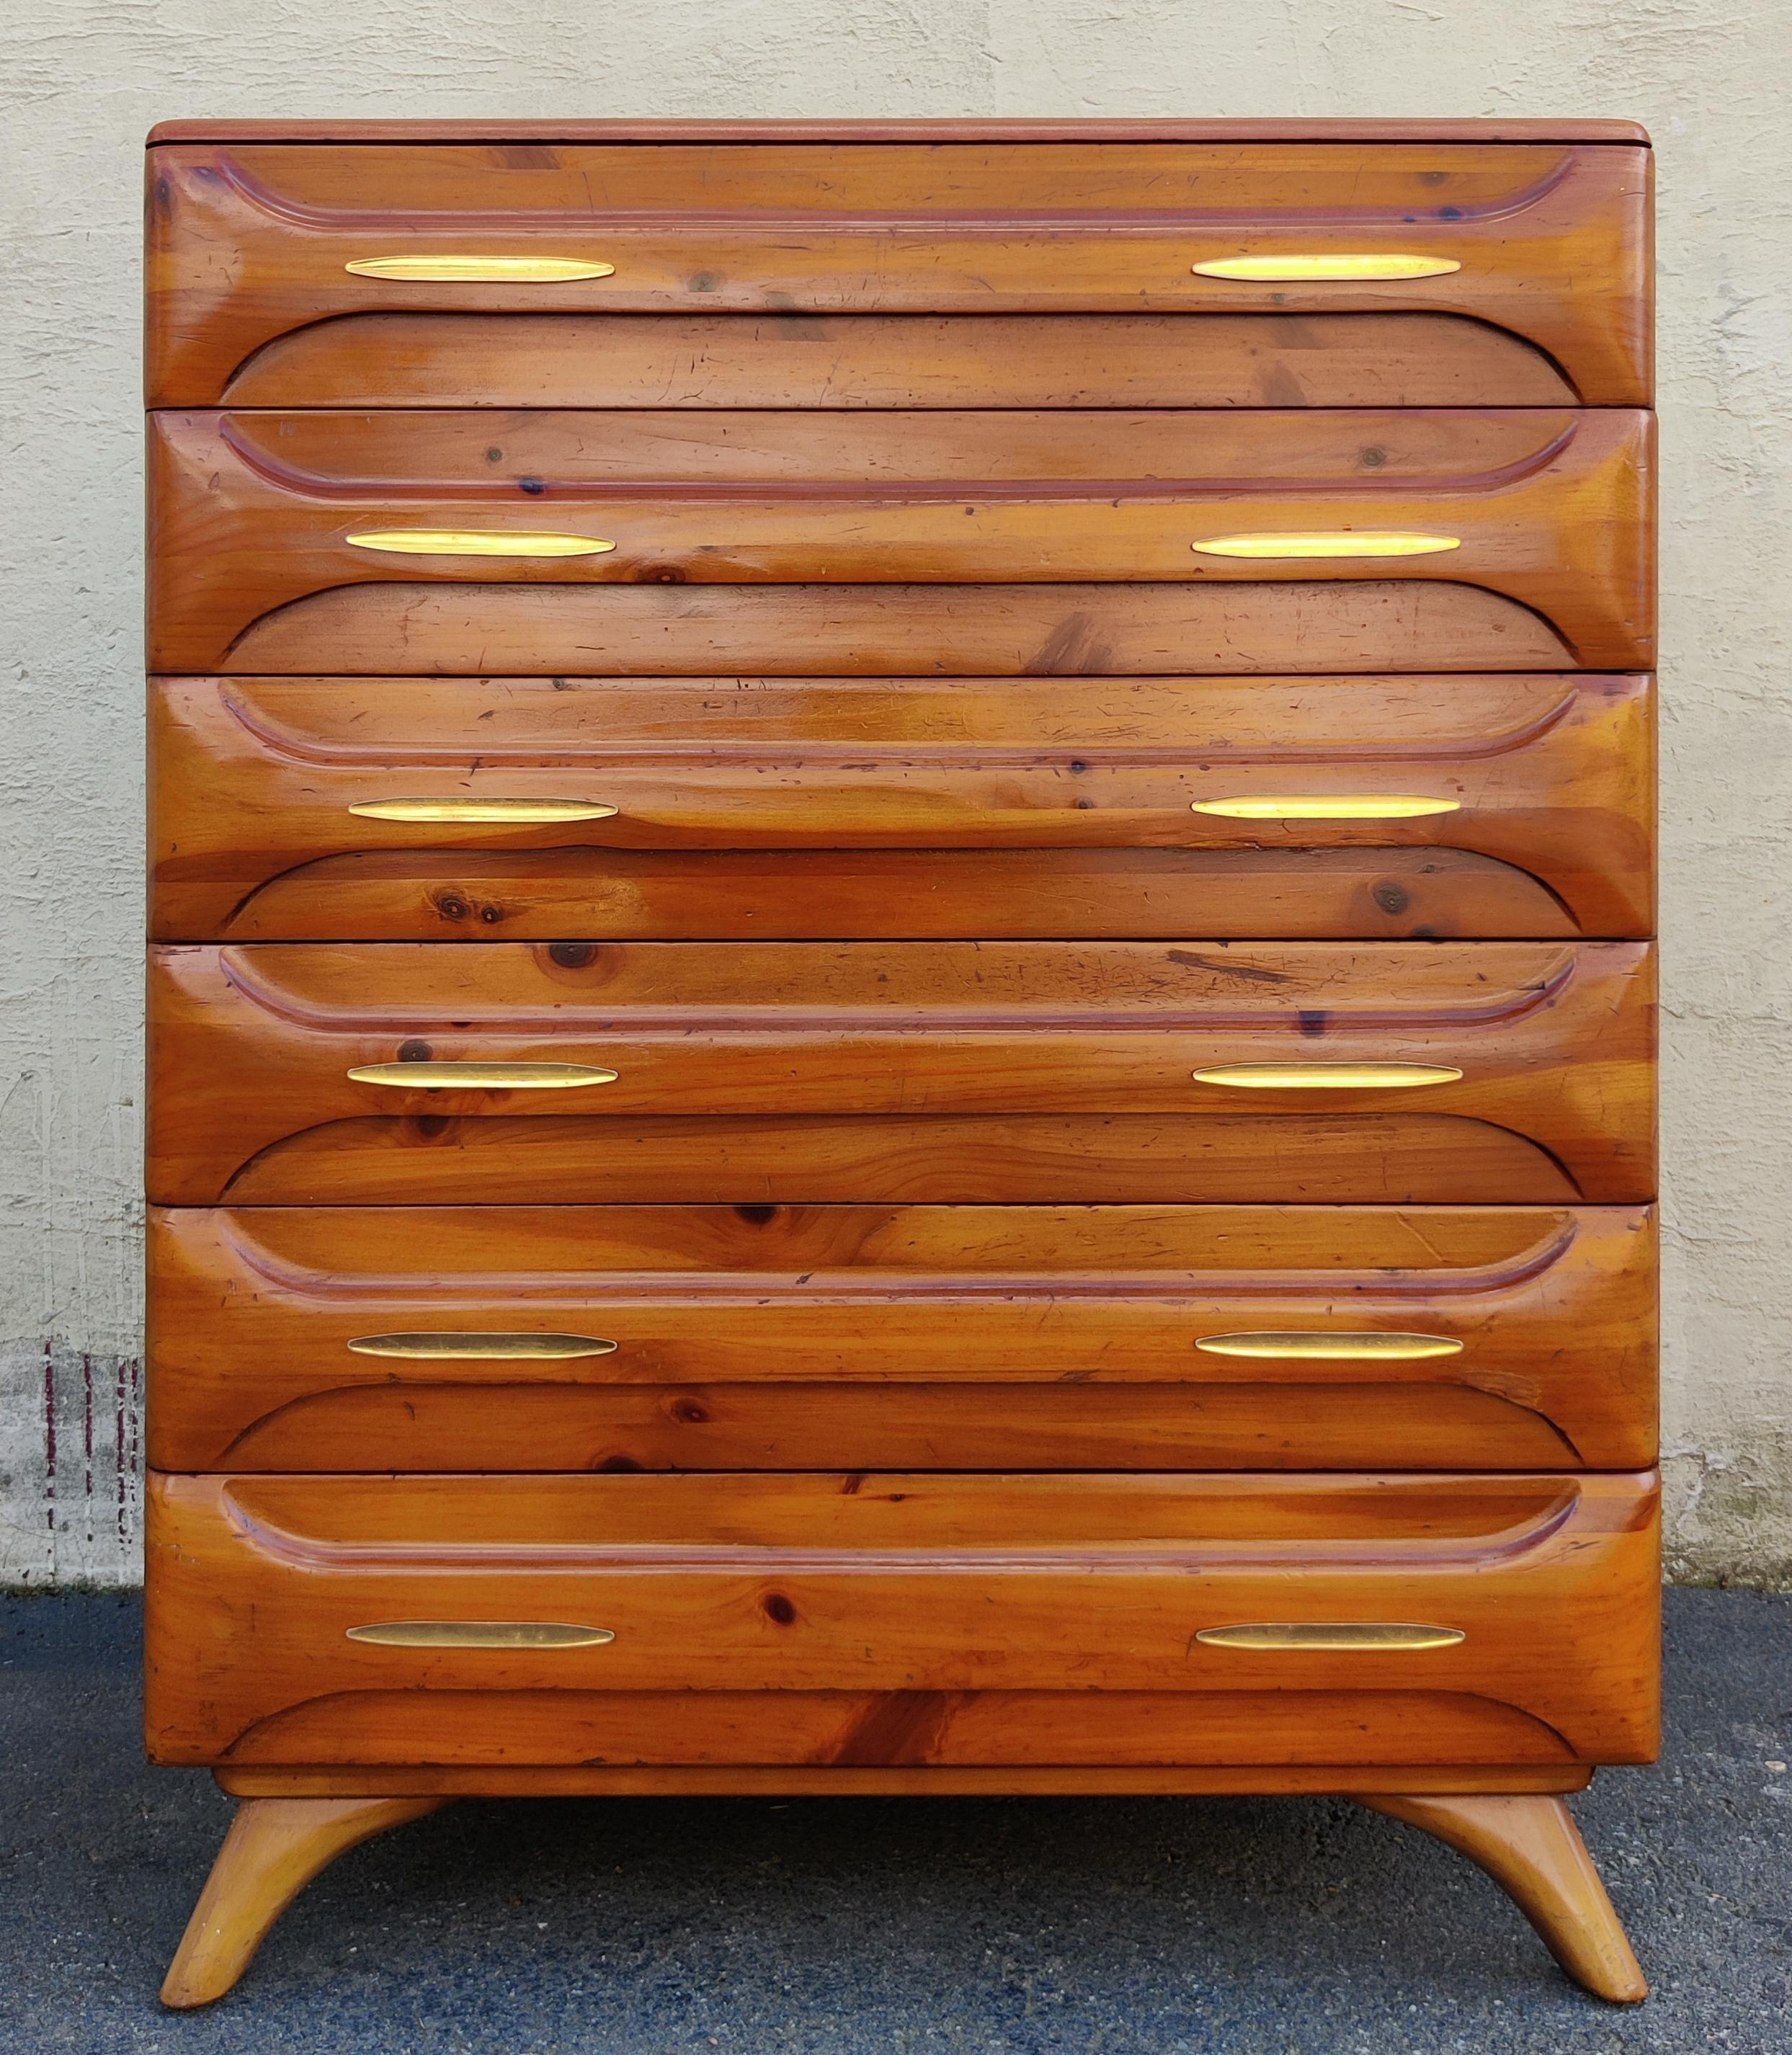 Esta cómoda alta fue fabricada en la década de 1970 por Franklin Shockey Company para su línea de muebles Sculptured Pine. Con una construcción de pino macizo, esta cómoda tiene un color pino dorado claro y cálido con acabado barnizado satinado.